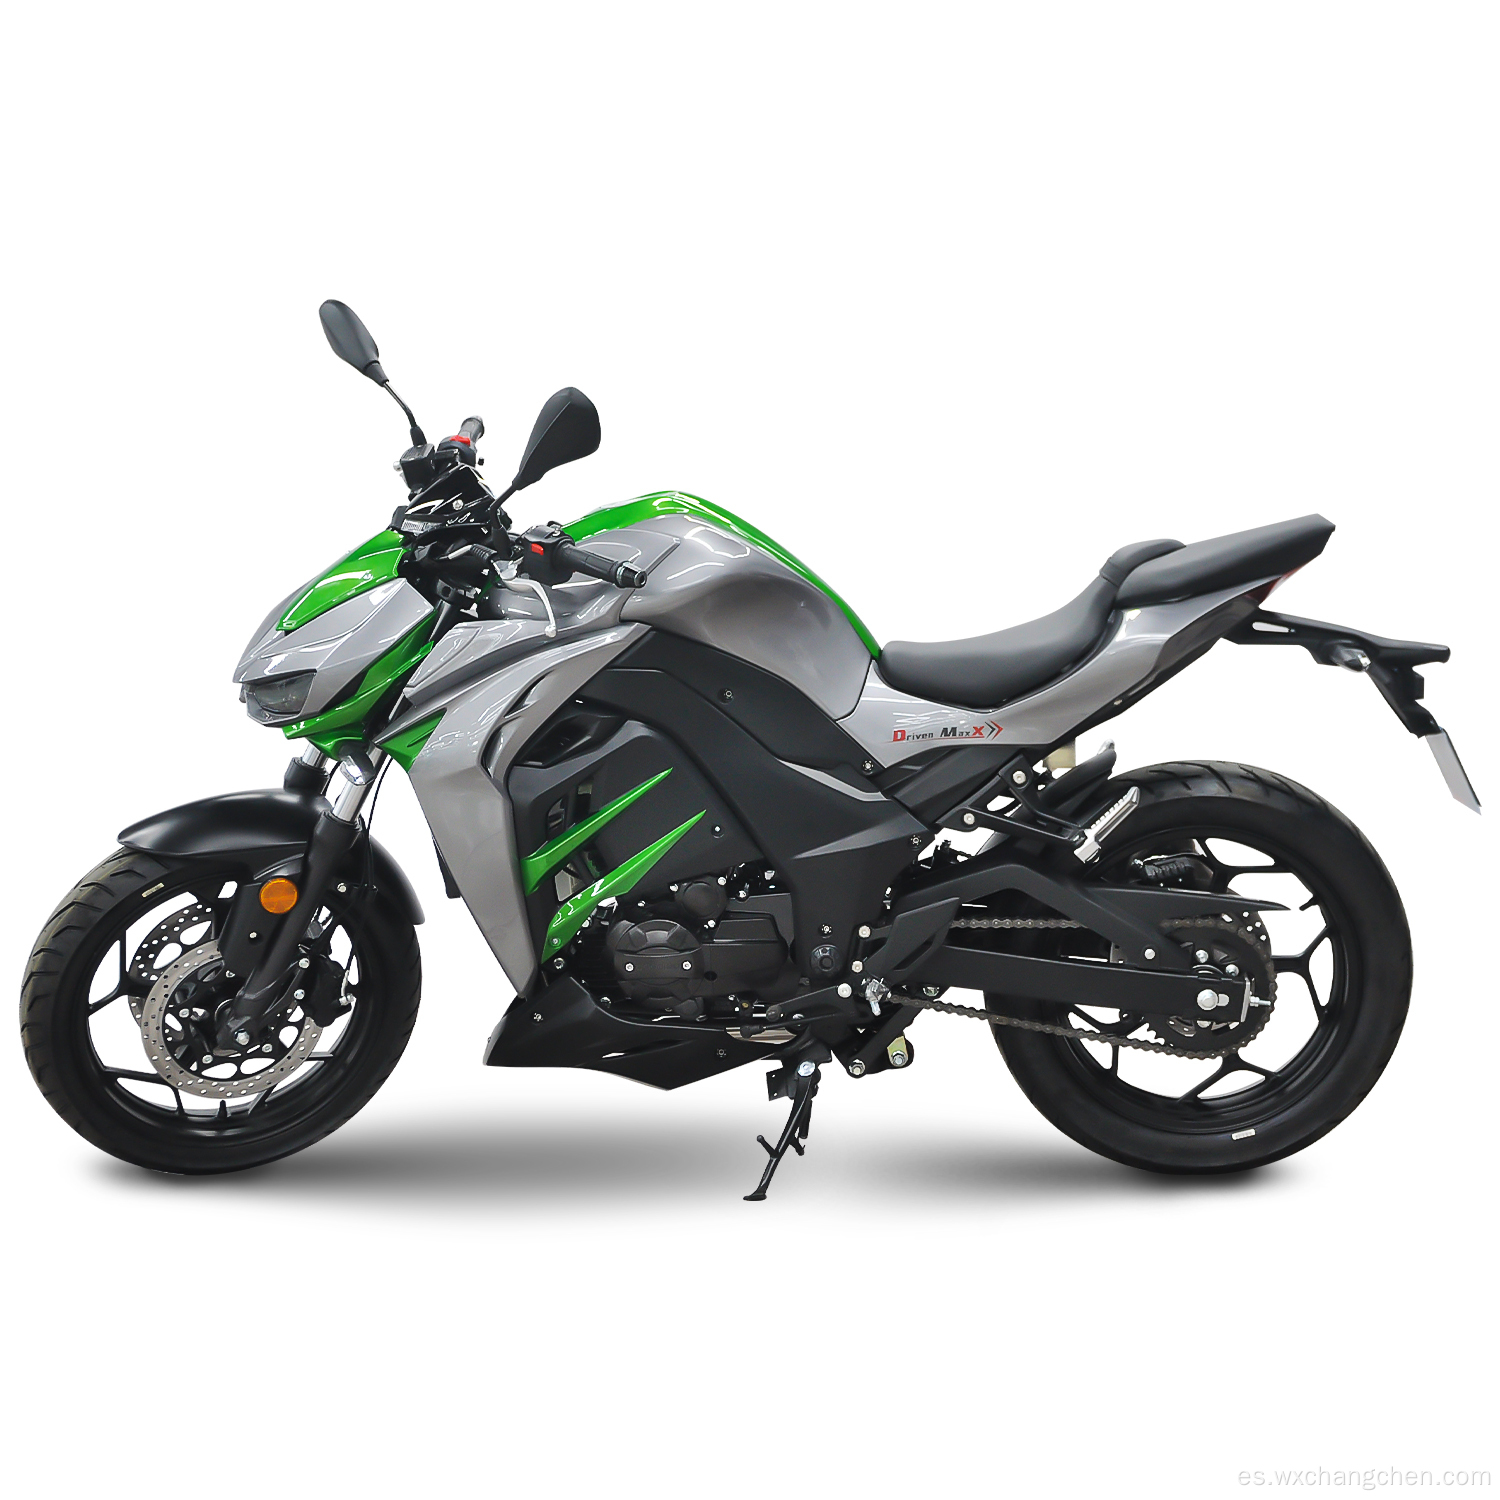 Venta en caliente motocicleta de gasolina con garantía de calidad de 400cc motocicleta de gas para la venta